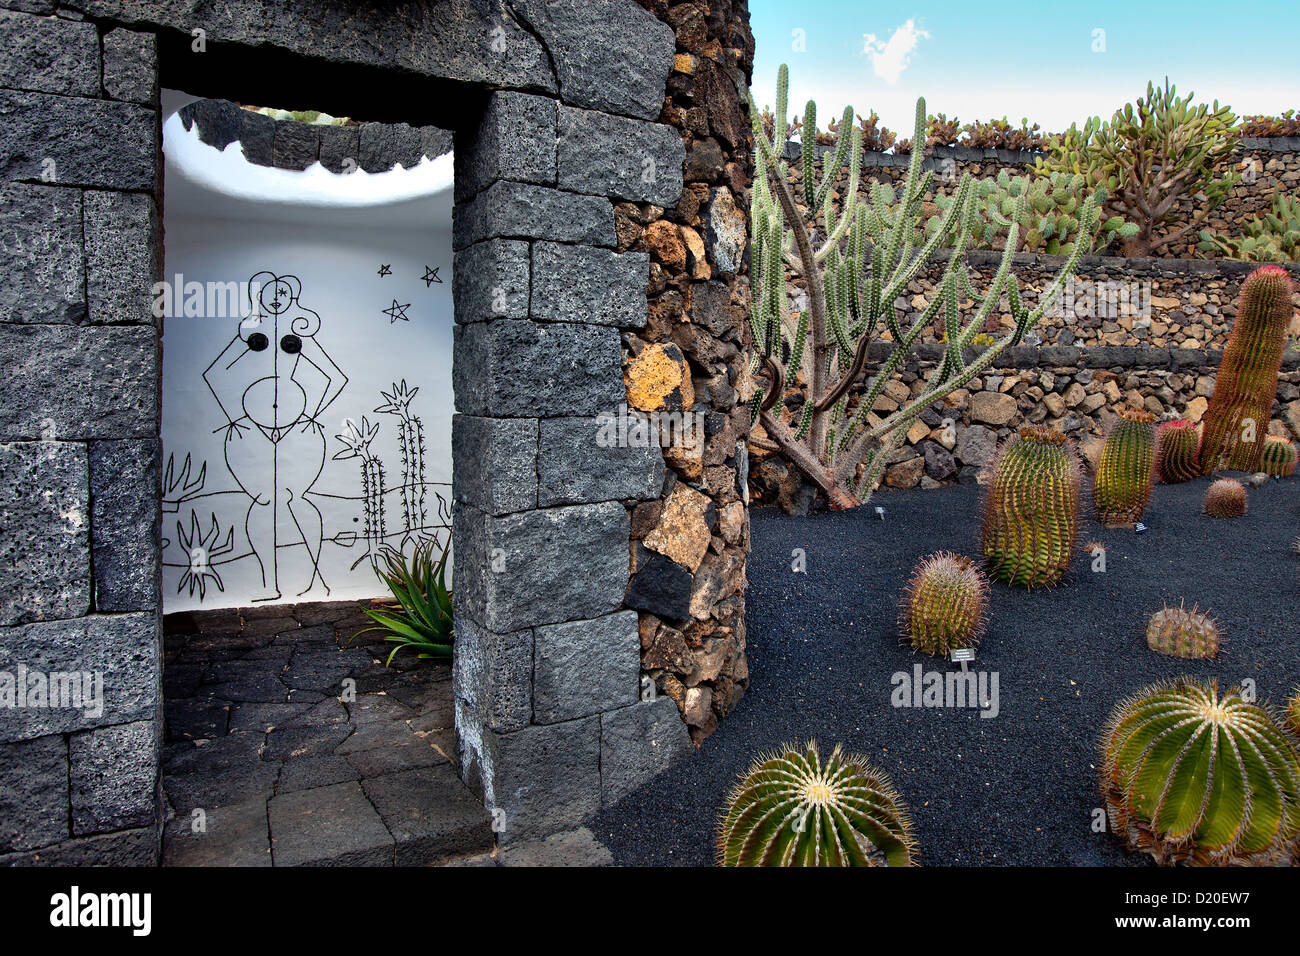 Toilettes pour dames au jardin botanique Jardin de cactus, architecte Casar Manrique, Guatiza, Lanzarote, Canaries, Espagne, E Banque D'Images